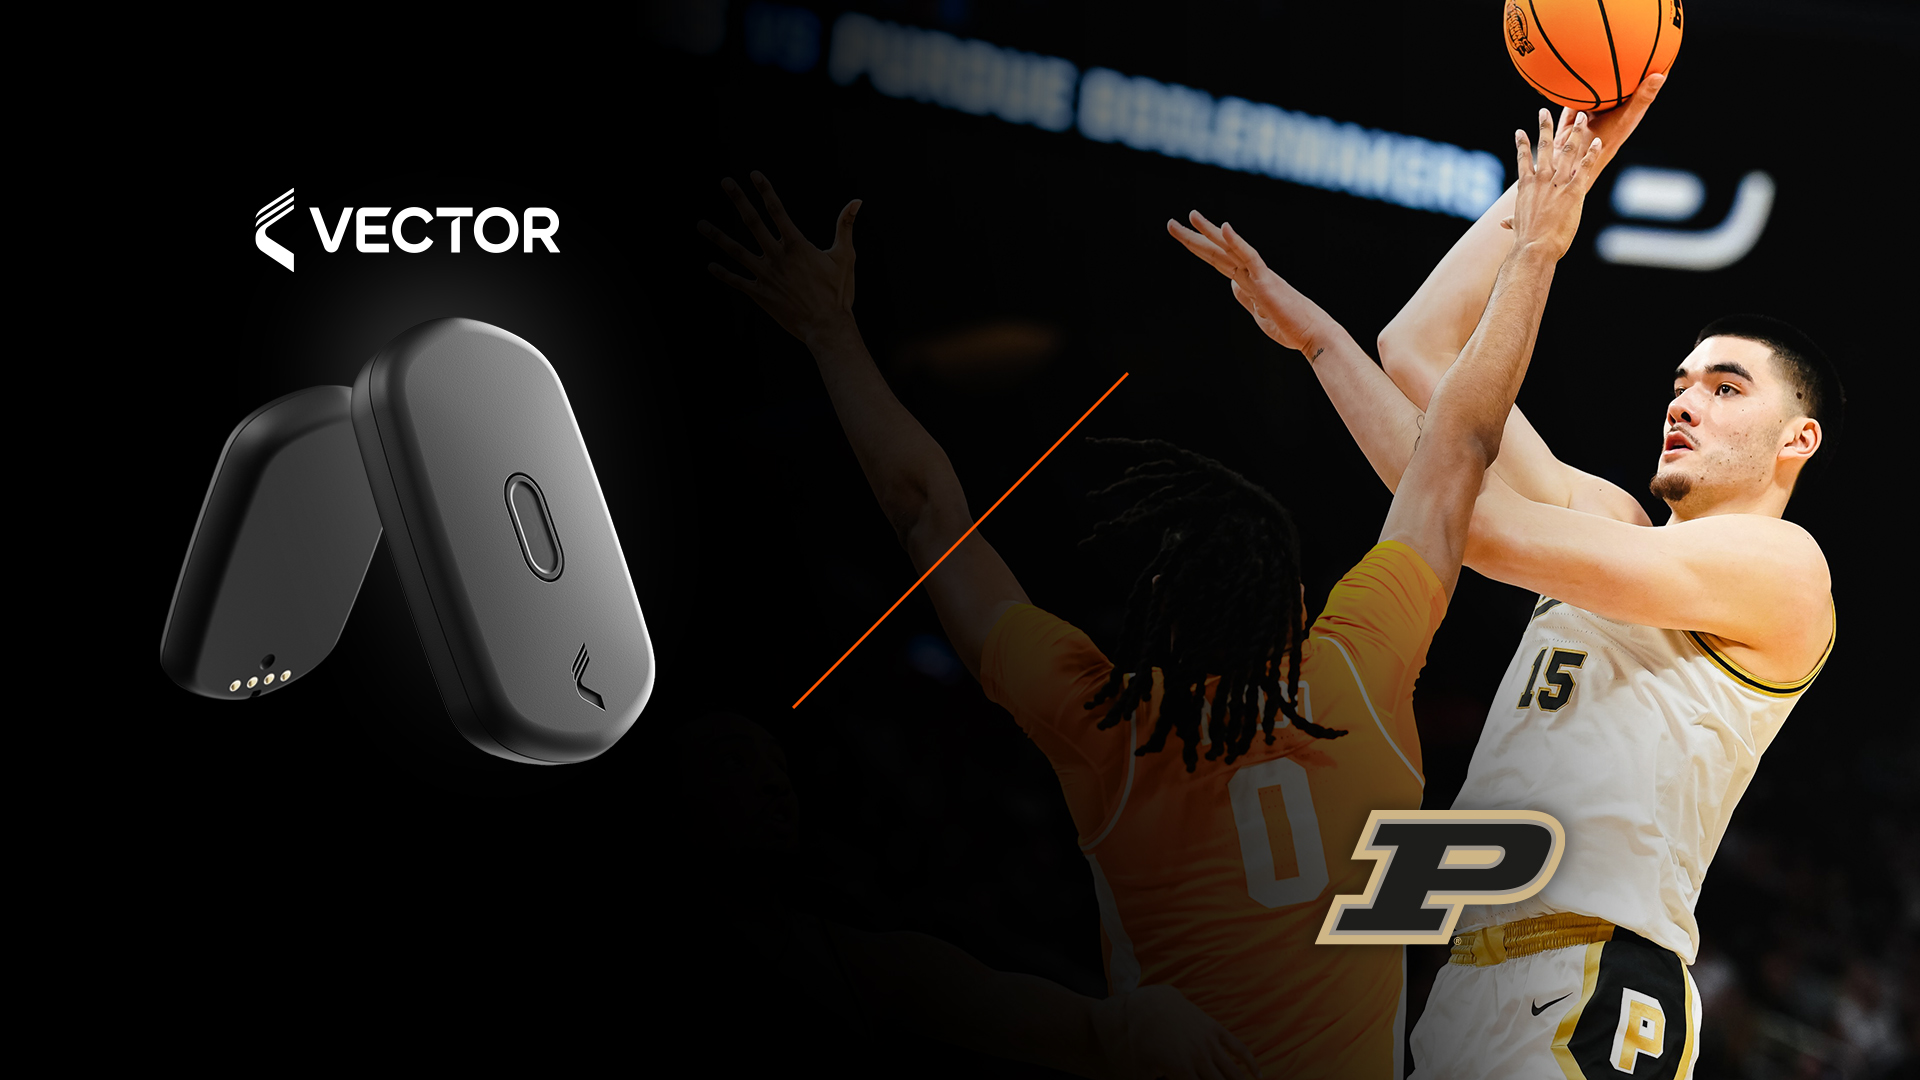 Рекламное изображение устройства спортивного мониторинга Vector T7, на котором изображен баскетболист Purdue в действии, готовый бросить мяч.